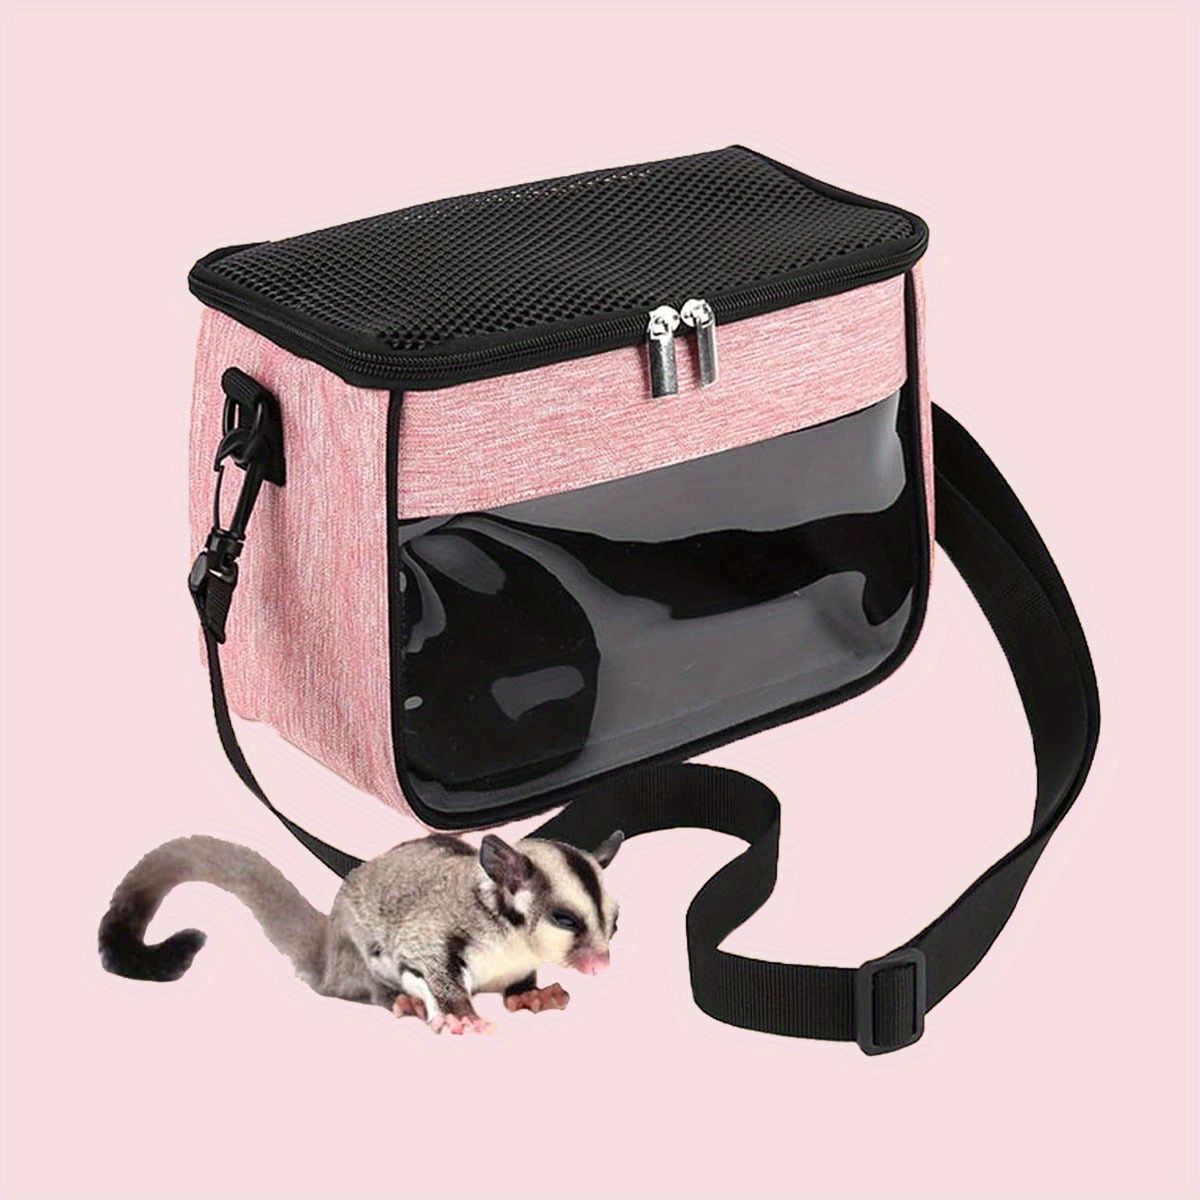 ハムスターキャリアバッグ、小動物用旅行バッグ、調節可能なストラップ